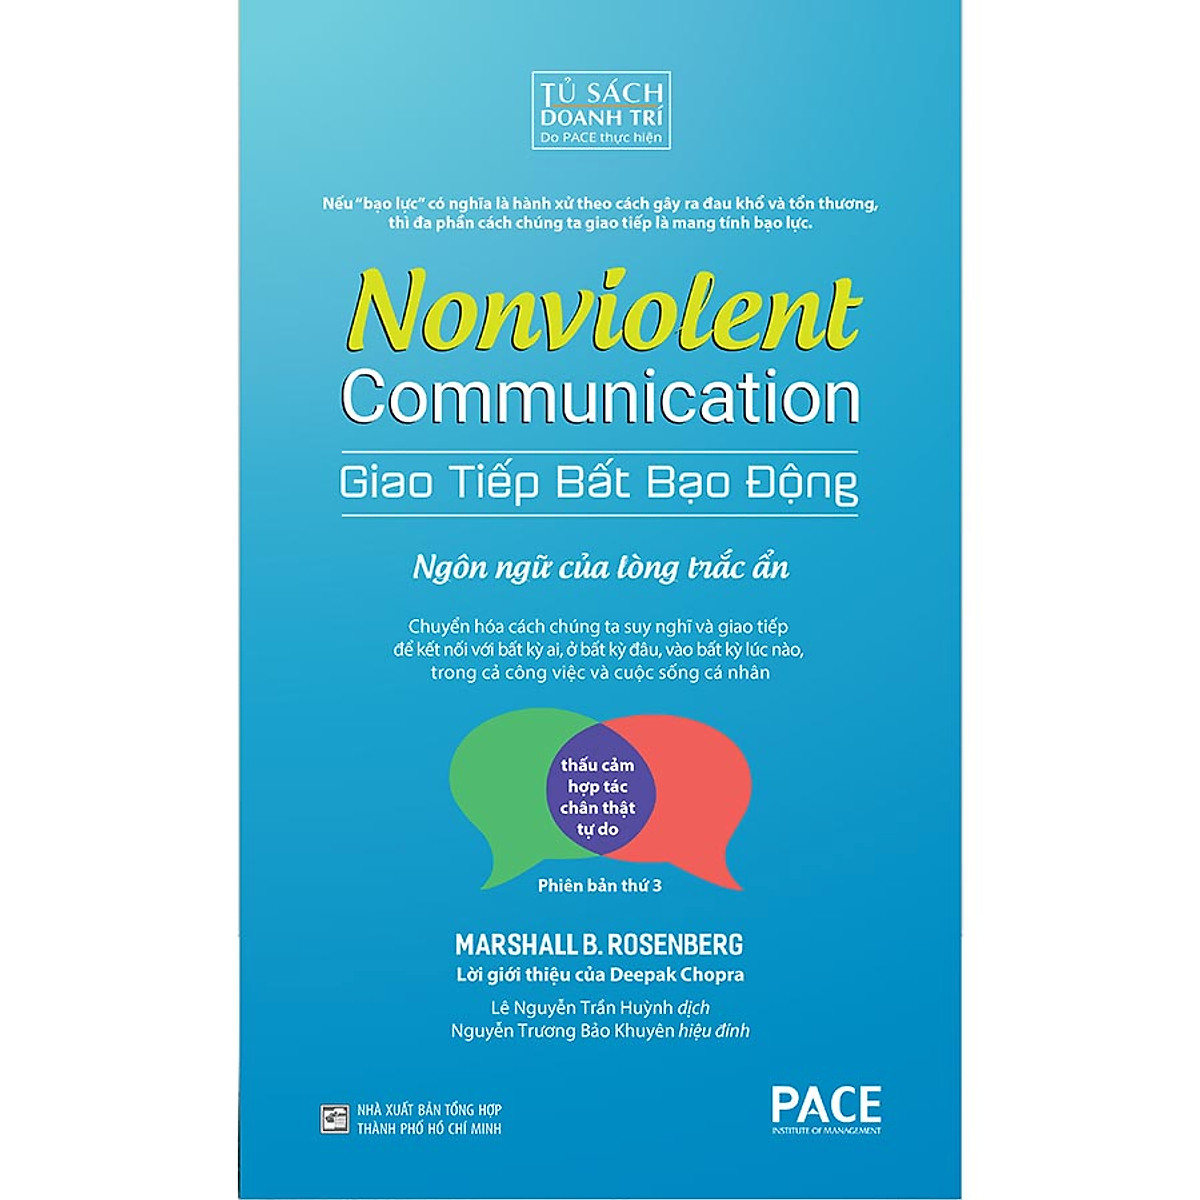 Giao Tiếp Bất Bạo Động (Nonviolent Communication)